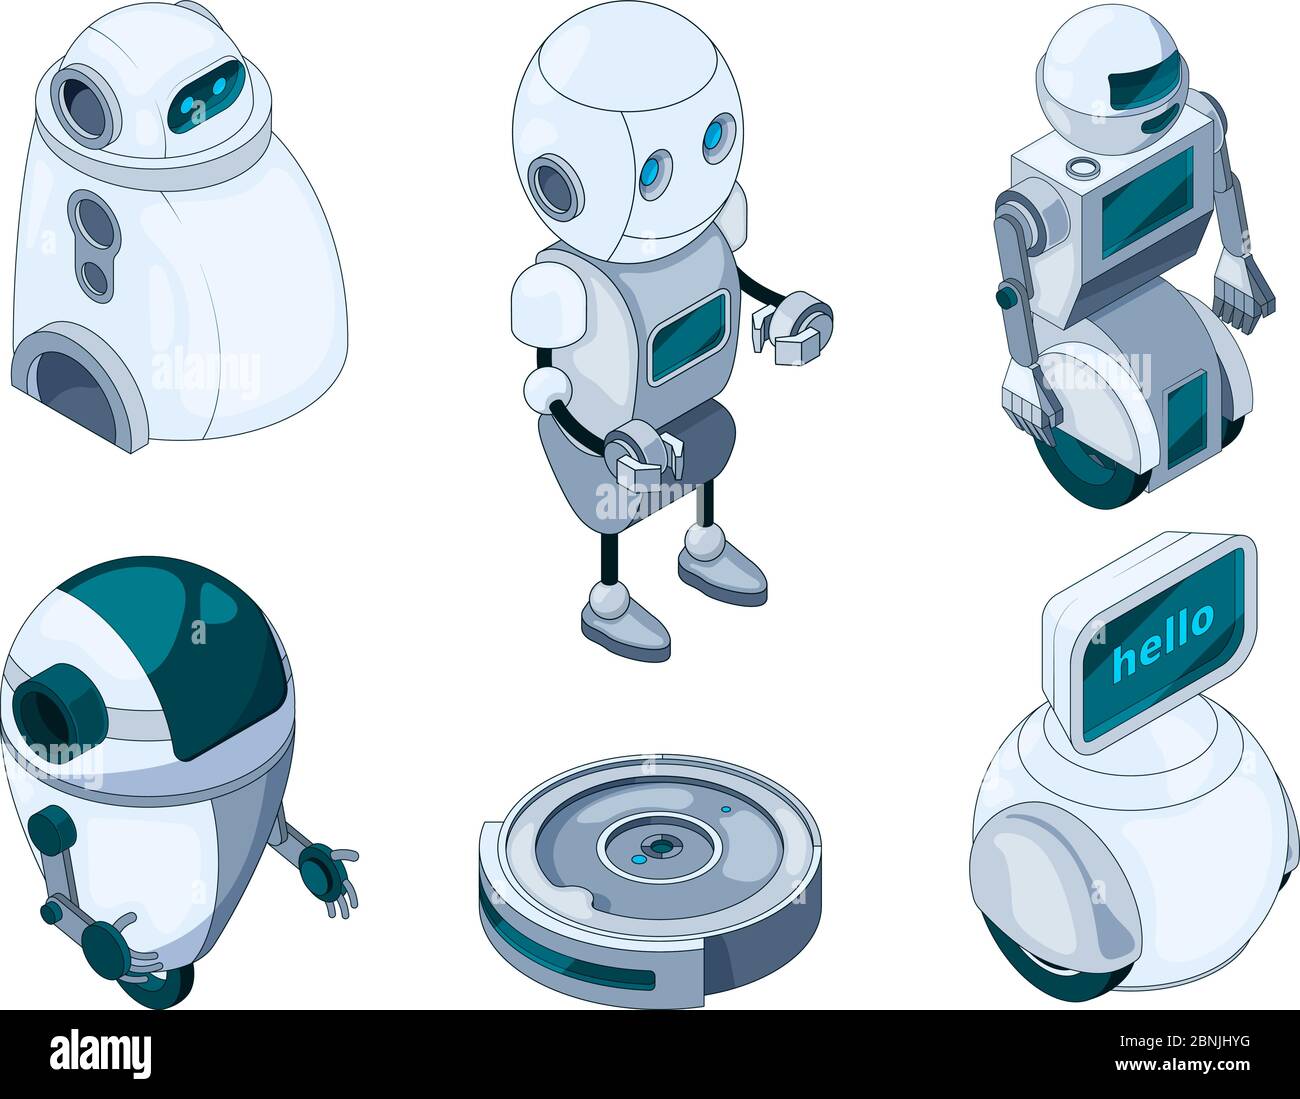 Robots domestiques Banque d'images détourées - Alamy